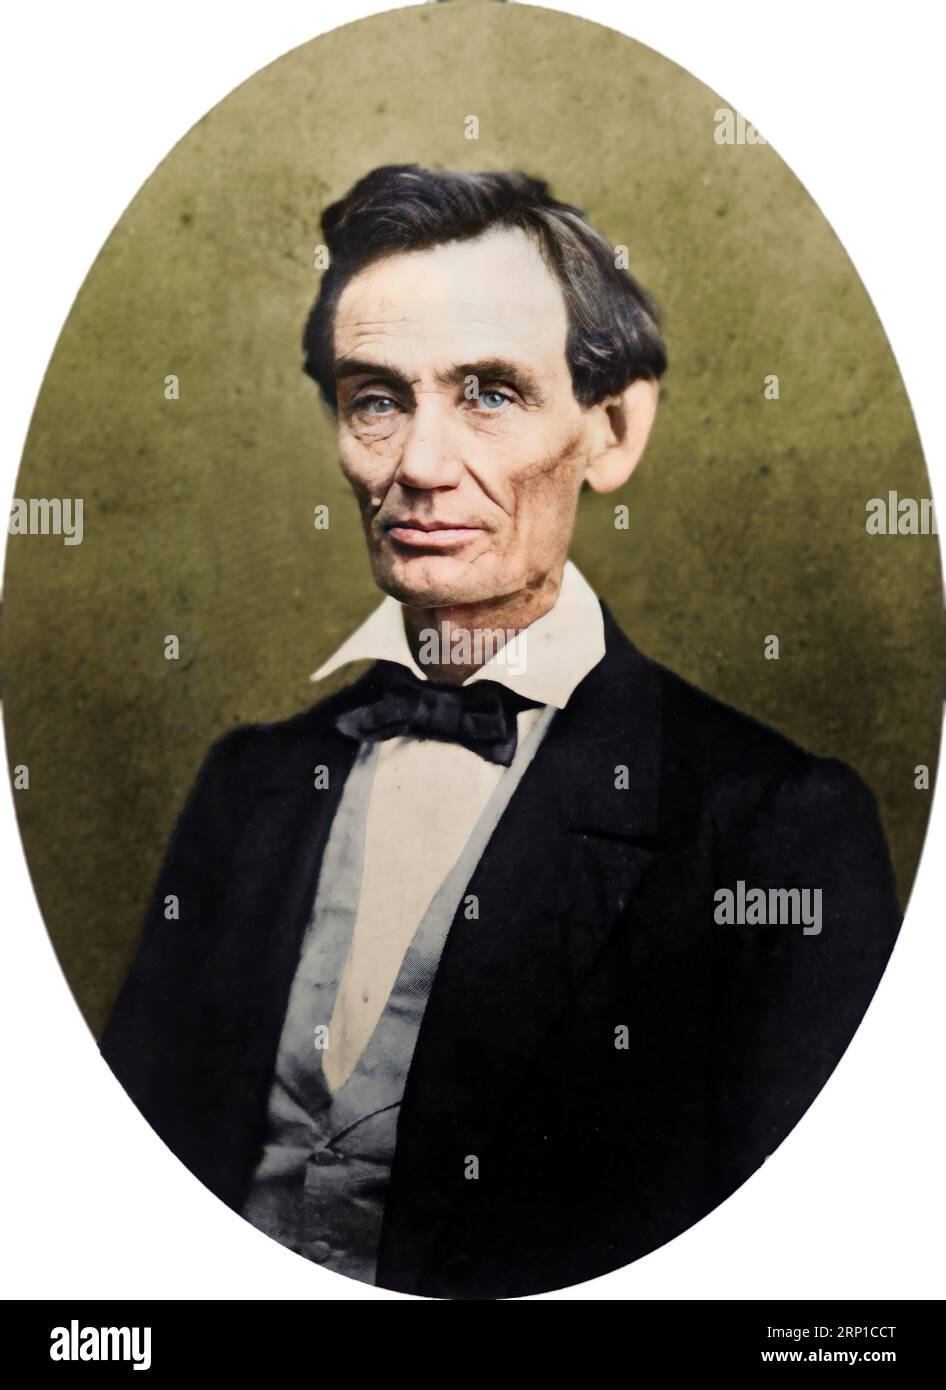 Foto von Abraham Lincoln. 1859. Bitte beachten Sie, dass die Fläche digital verbessert wurde. Nicht geändert. Unbekannter Fotograf. Stockfoto